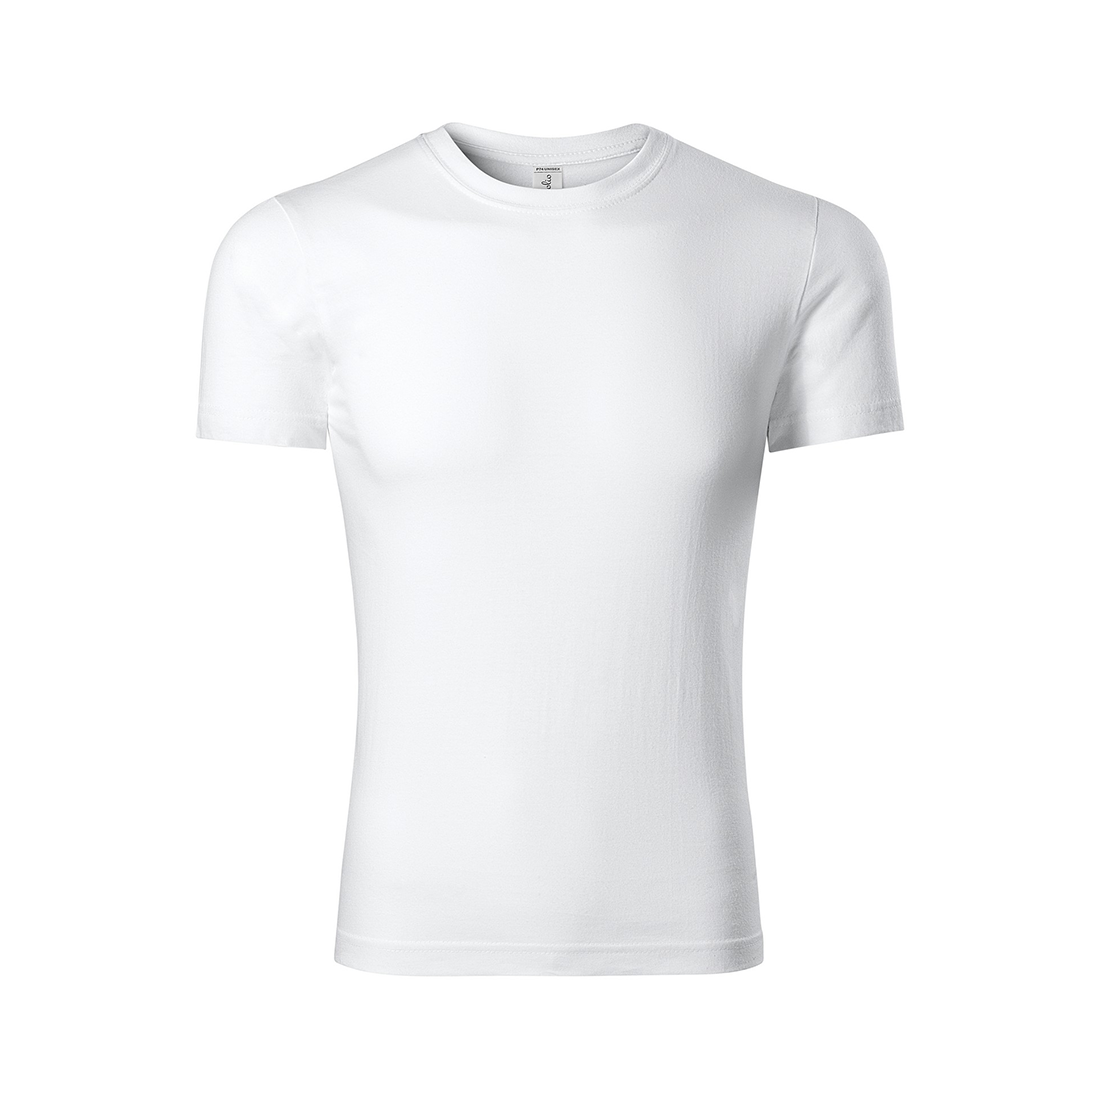 Camiseta unisex PEAK - Ropa de protección